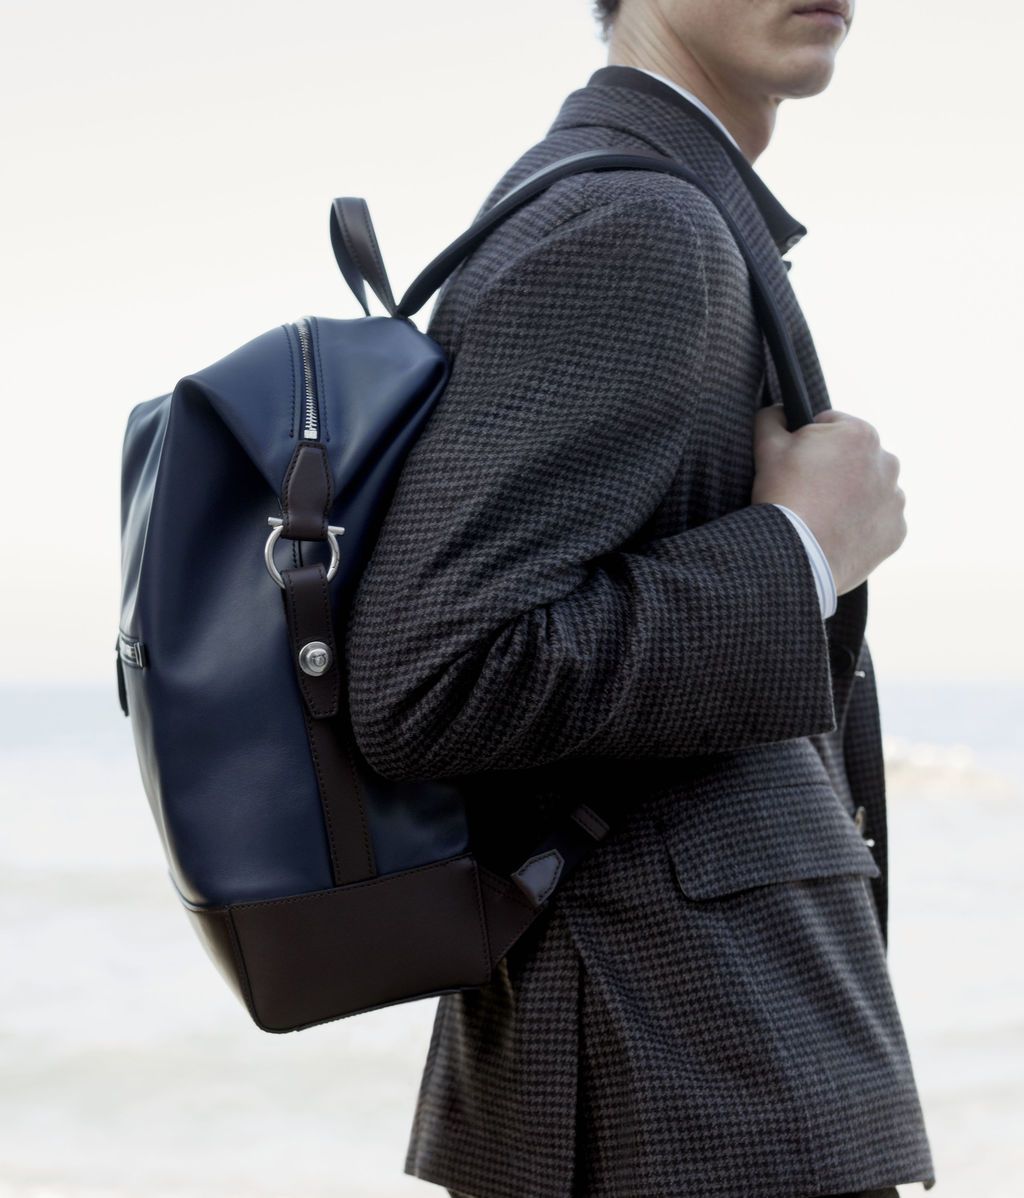 Las 23 mochilas de hombre con las que llevar tu estilo más cool a